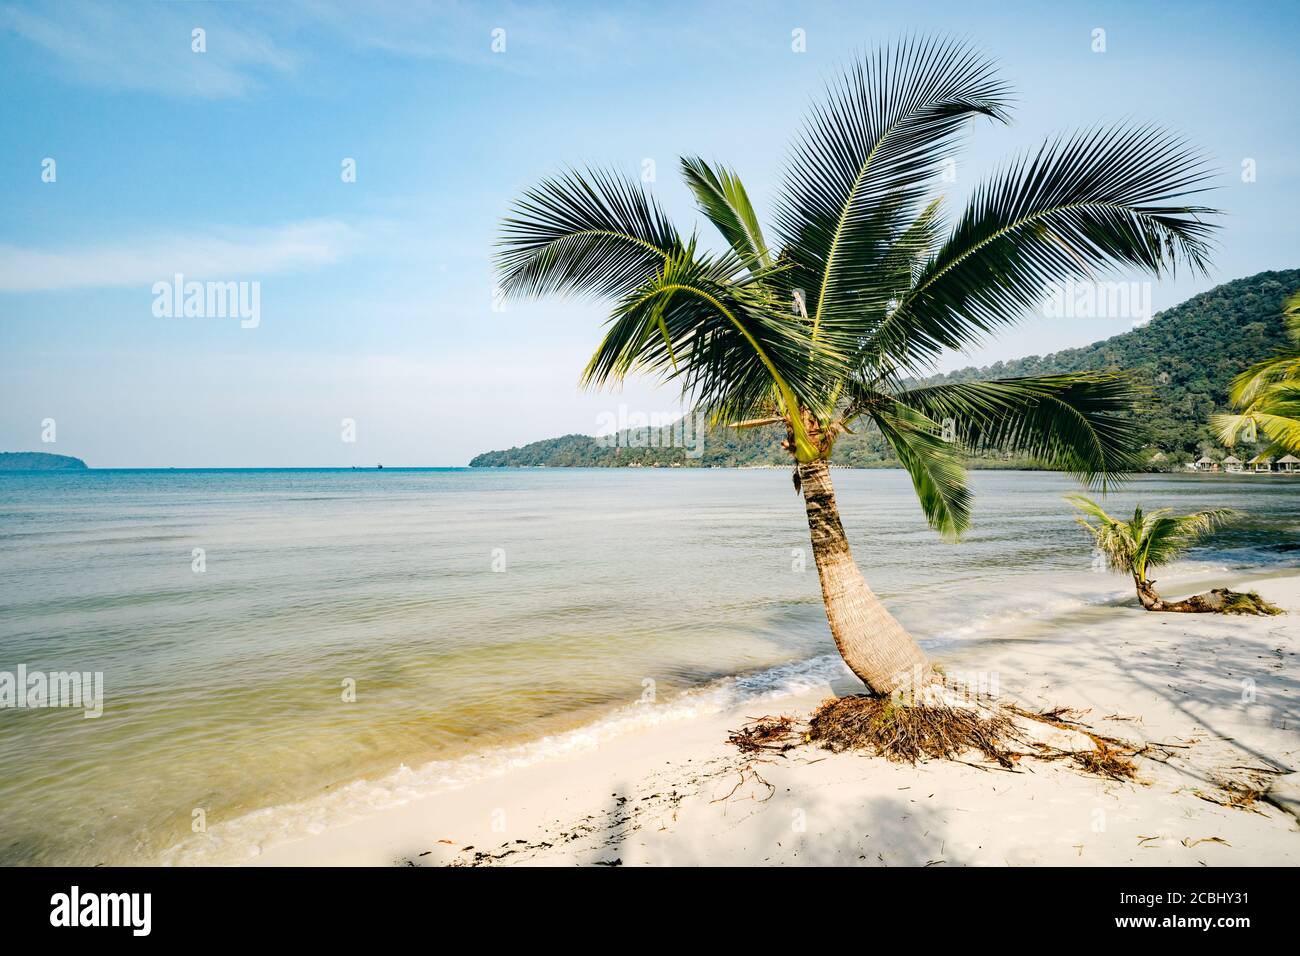 splendido paesaggio con grandi palme verdi in primo piano sullo sfondo di ombrelloni e lettini turistici su una bella spiaggia esotica Foto Stock